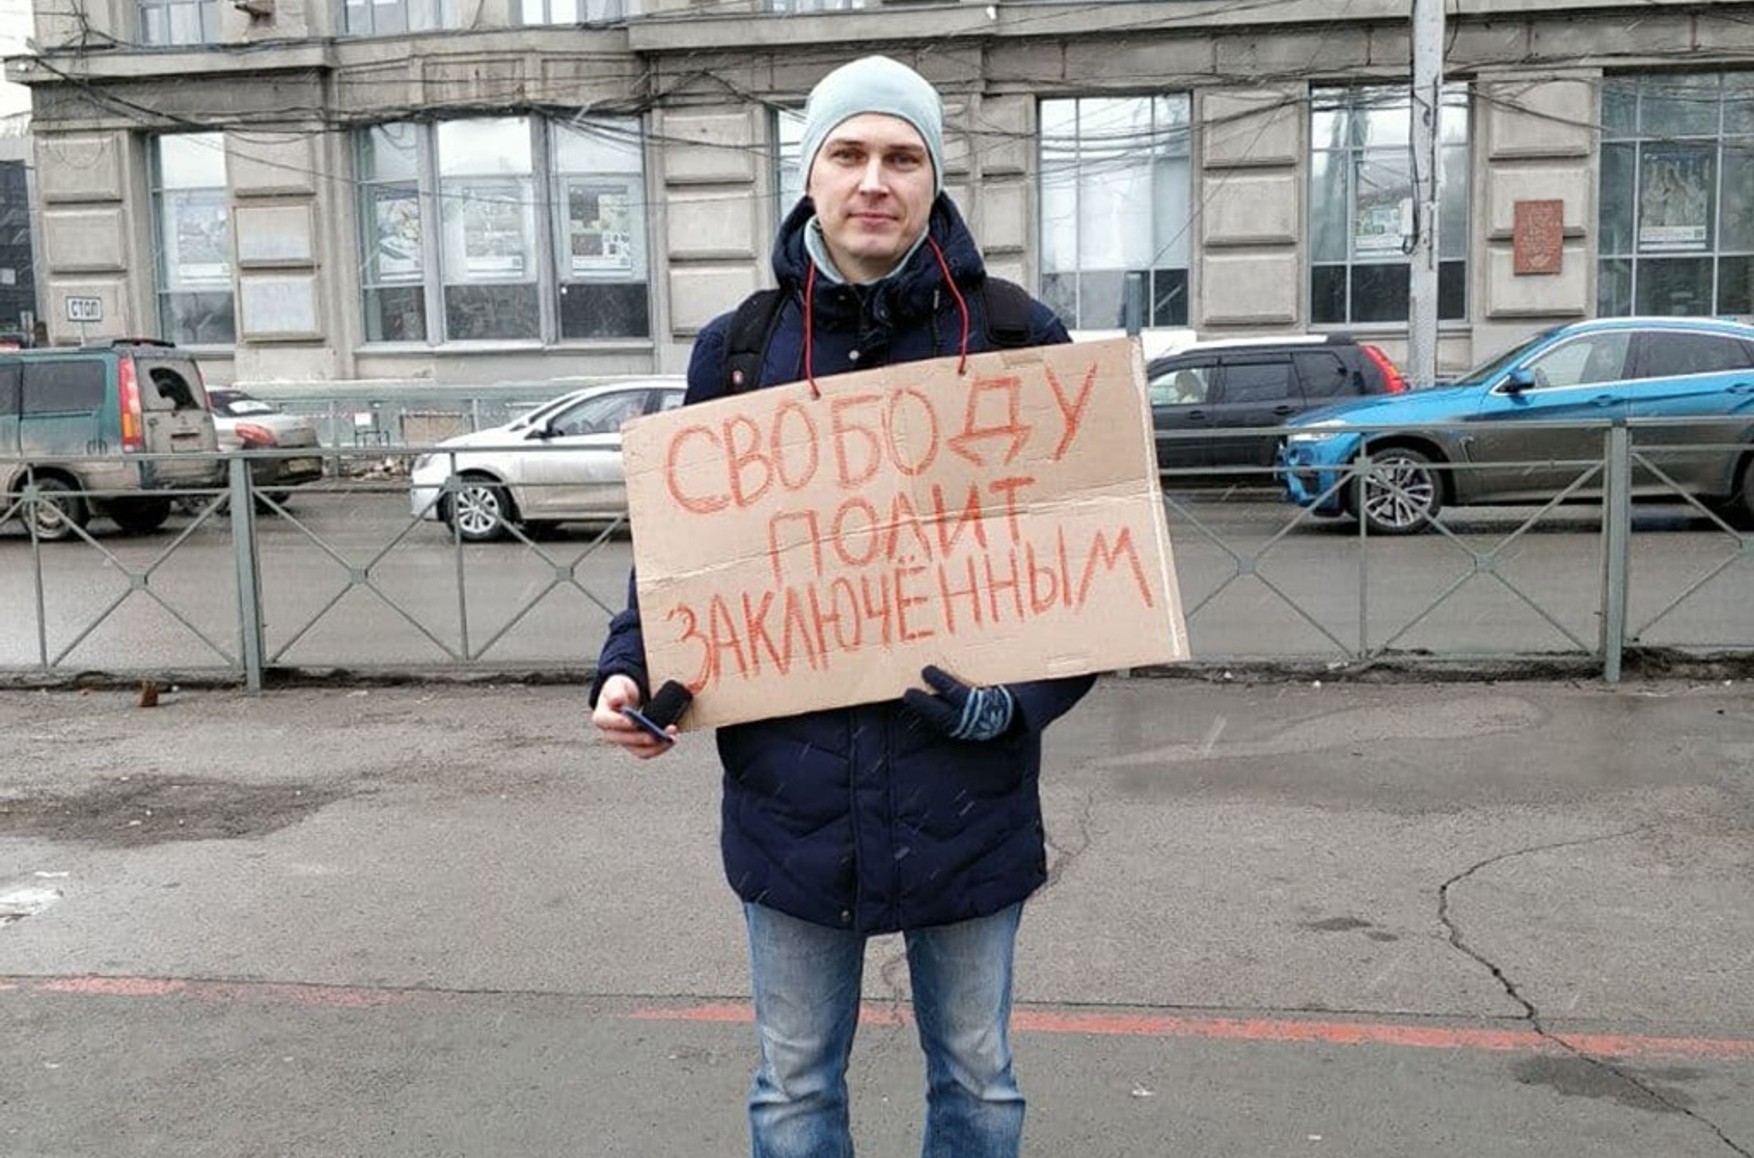 Силовики избили российского активиста из-за желто-синей одежды его сына на прогулке. Они снимали все на видео, пока ребенок плакал